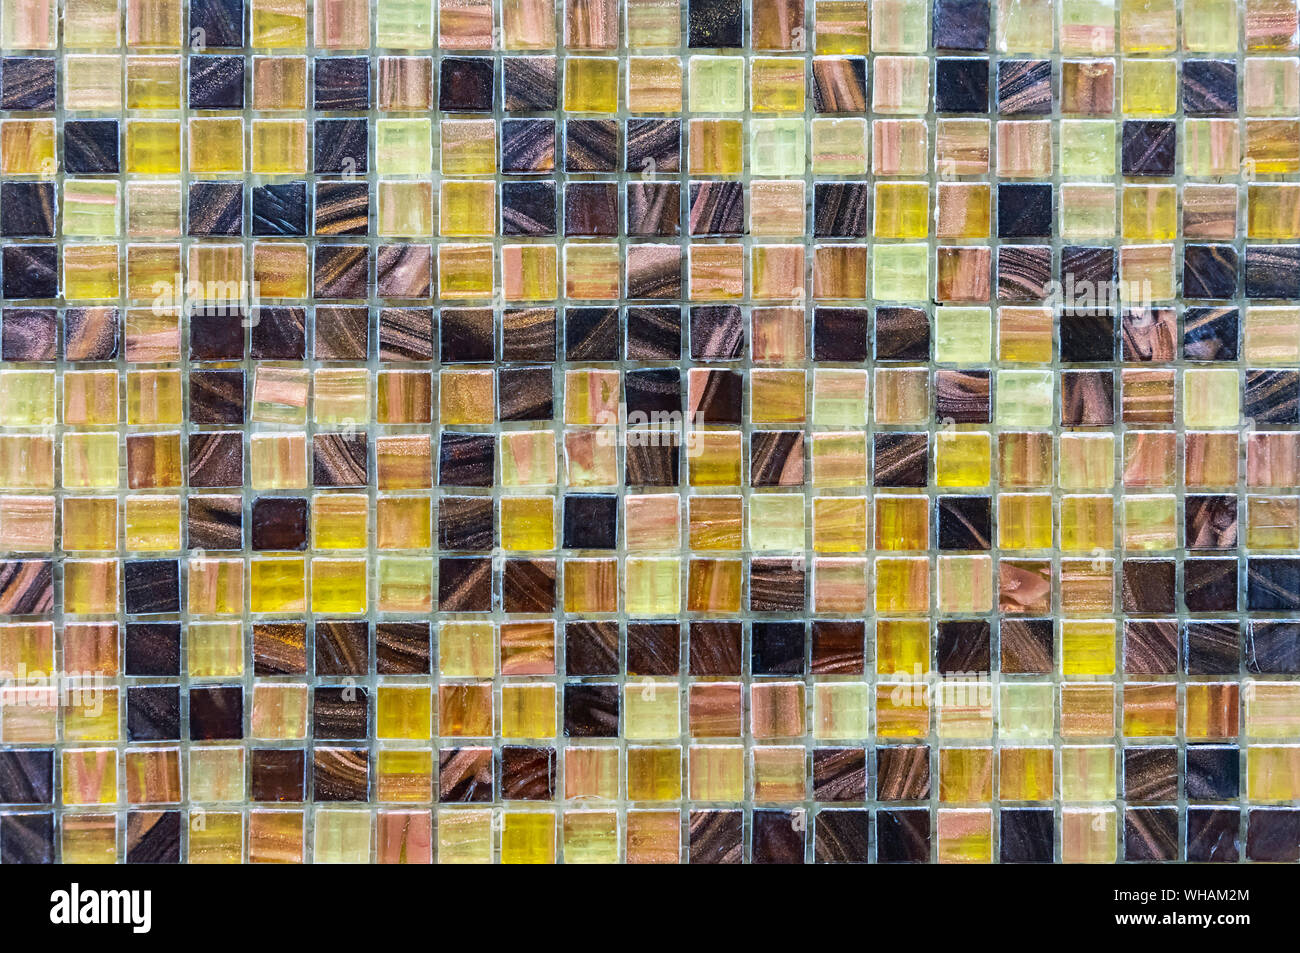 Mosaïque de carreaux de céramique. Background et texture tile mosaic. Mosaïque Mosaïque dans l'intérieur de la salle de bains ou cuisine. Banque D'Images